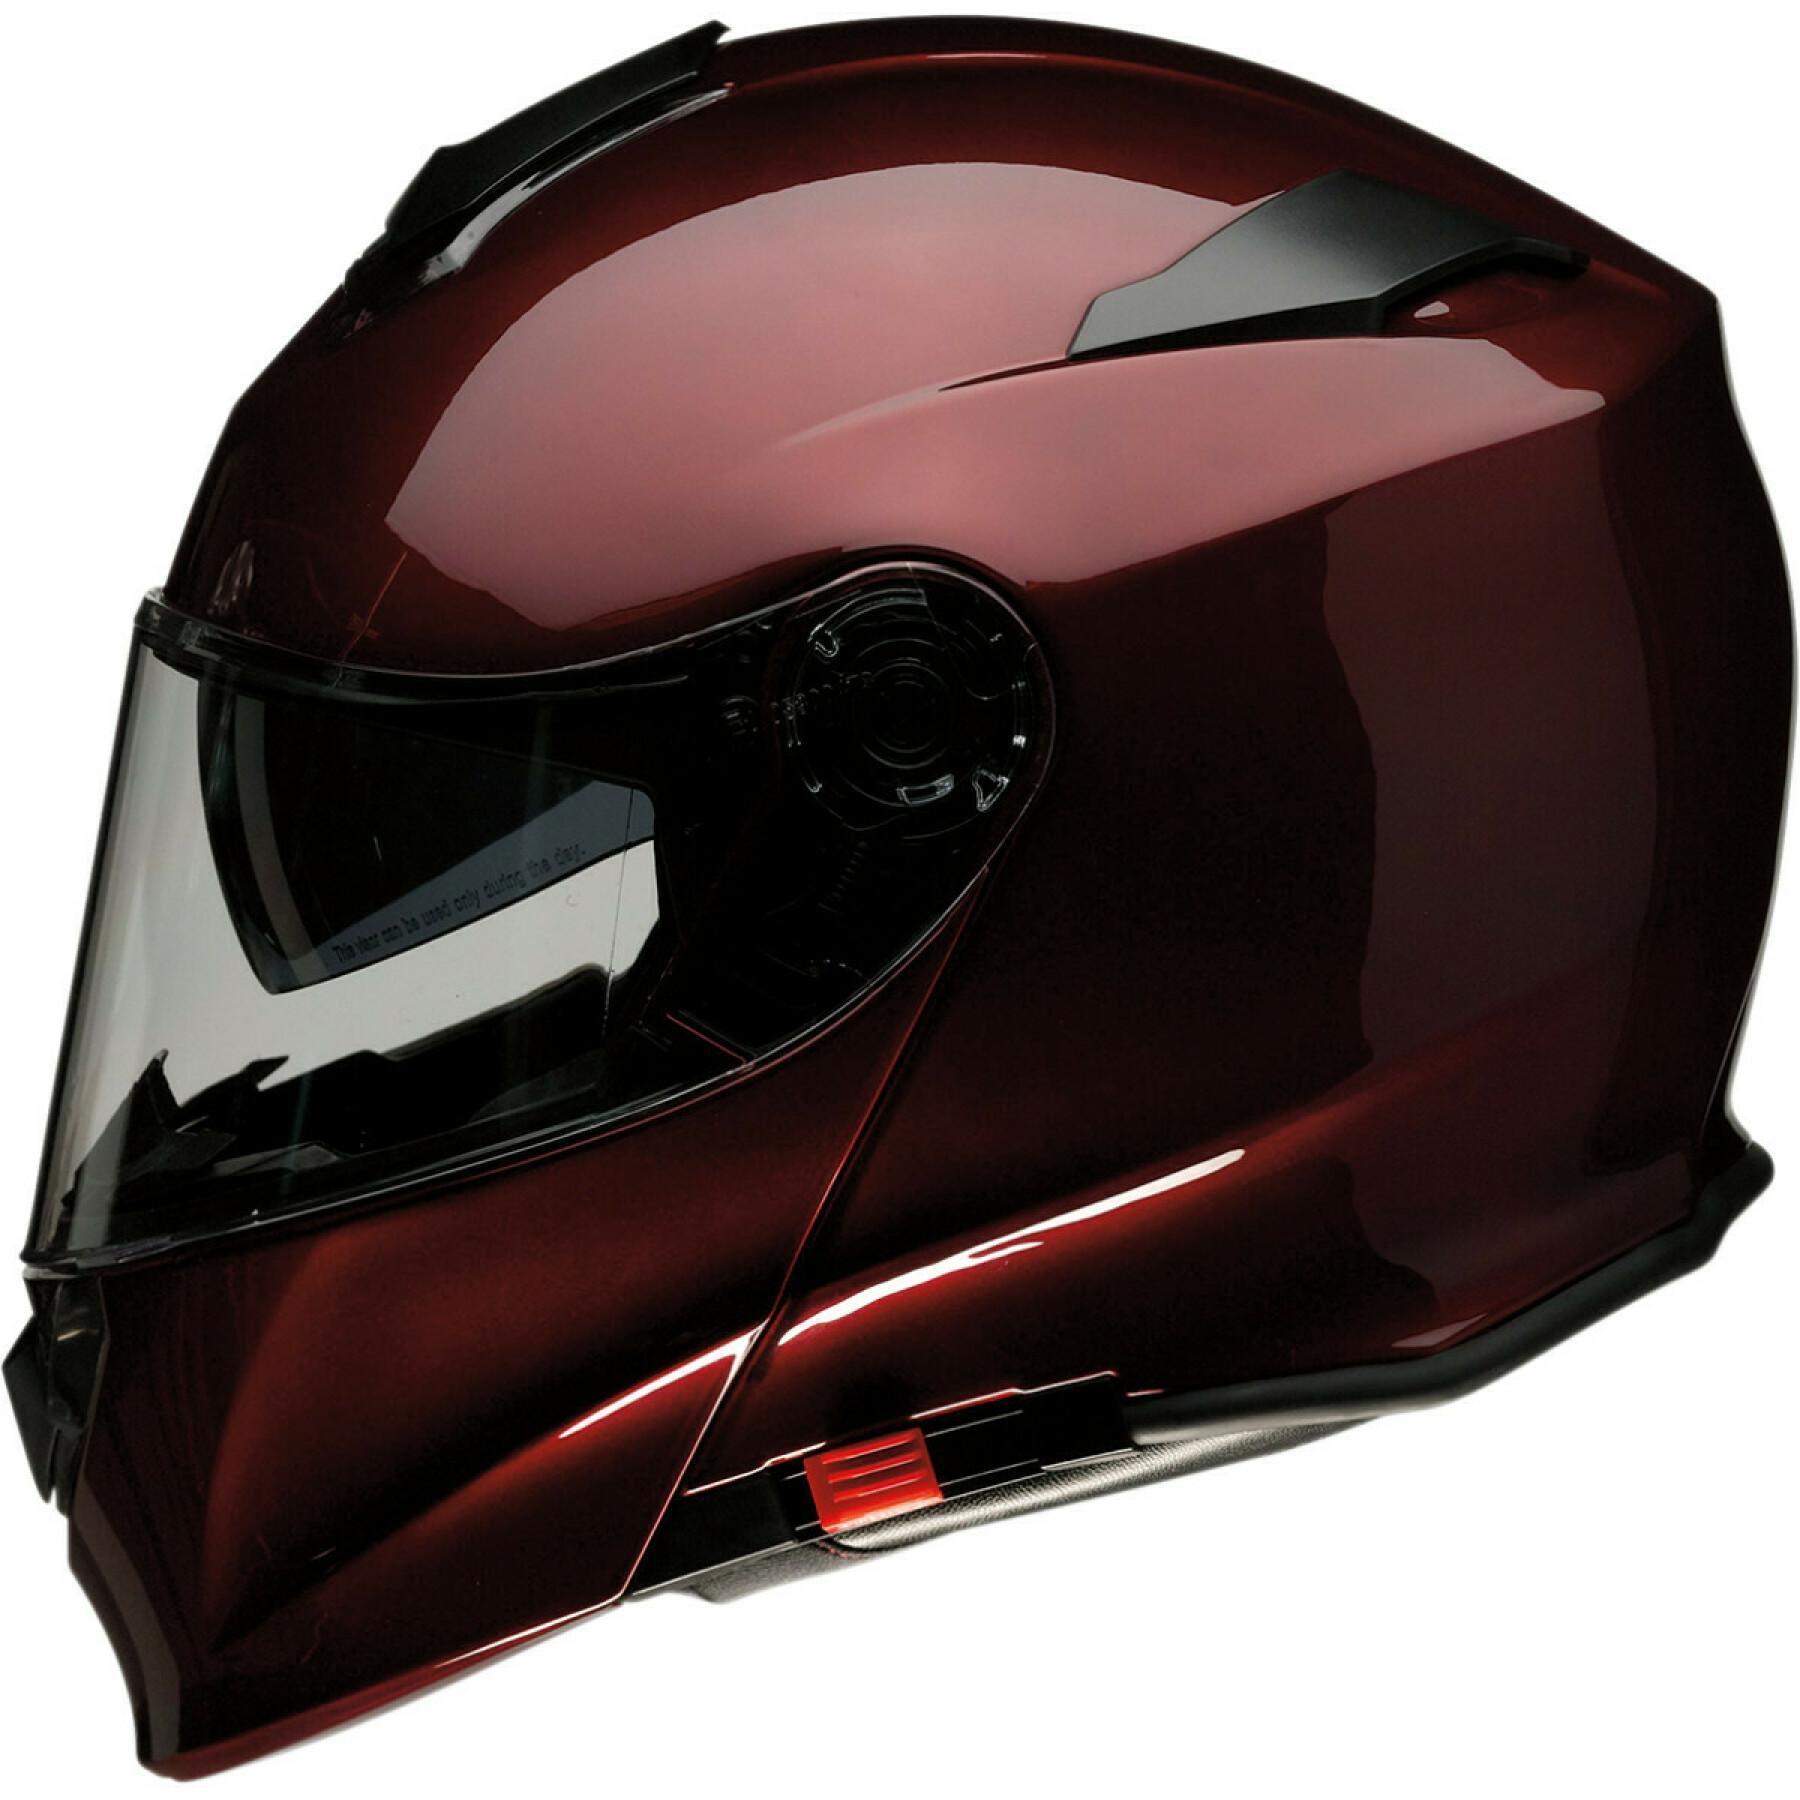 Helhjälm för motorcykel Z1R solaris wine